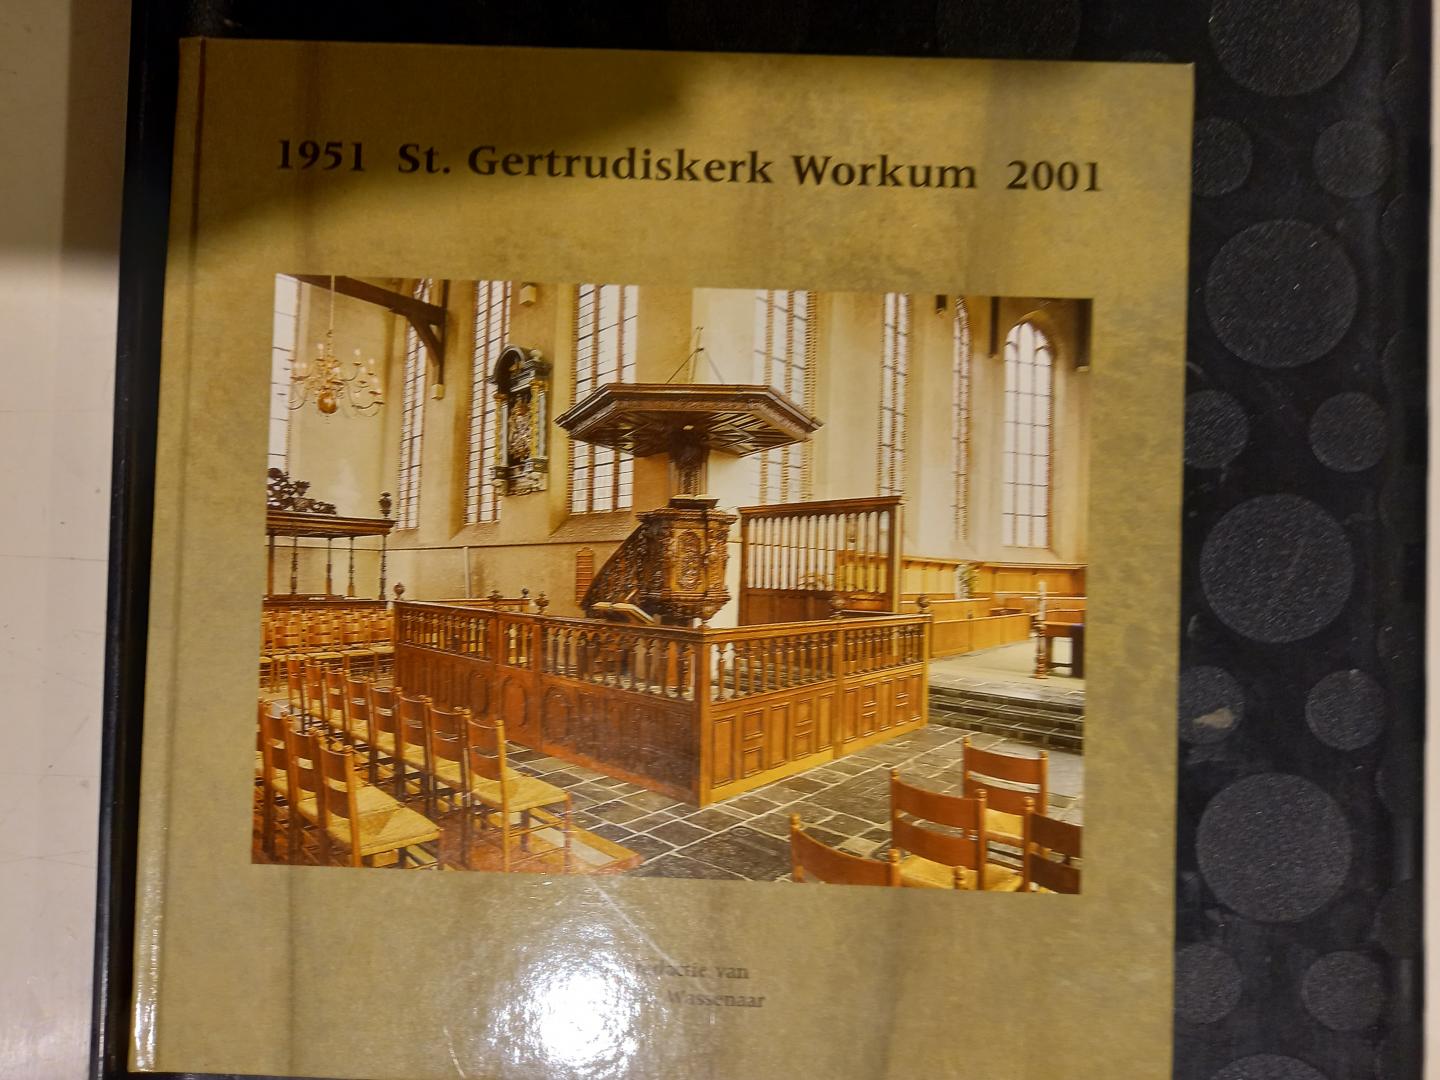 Wassenaar, Dr. J.D.Th. - 1951 St. Gertrudiskerk Workum 2001